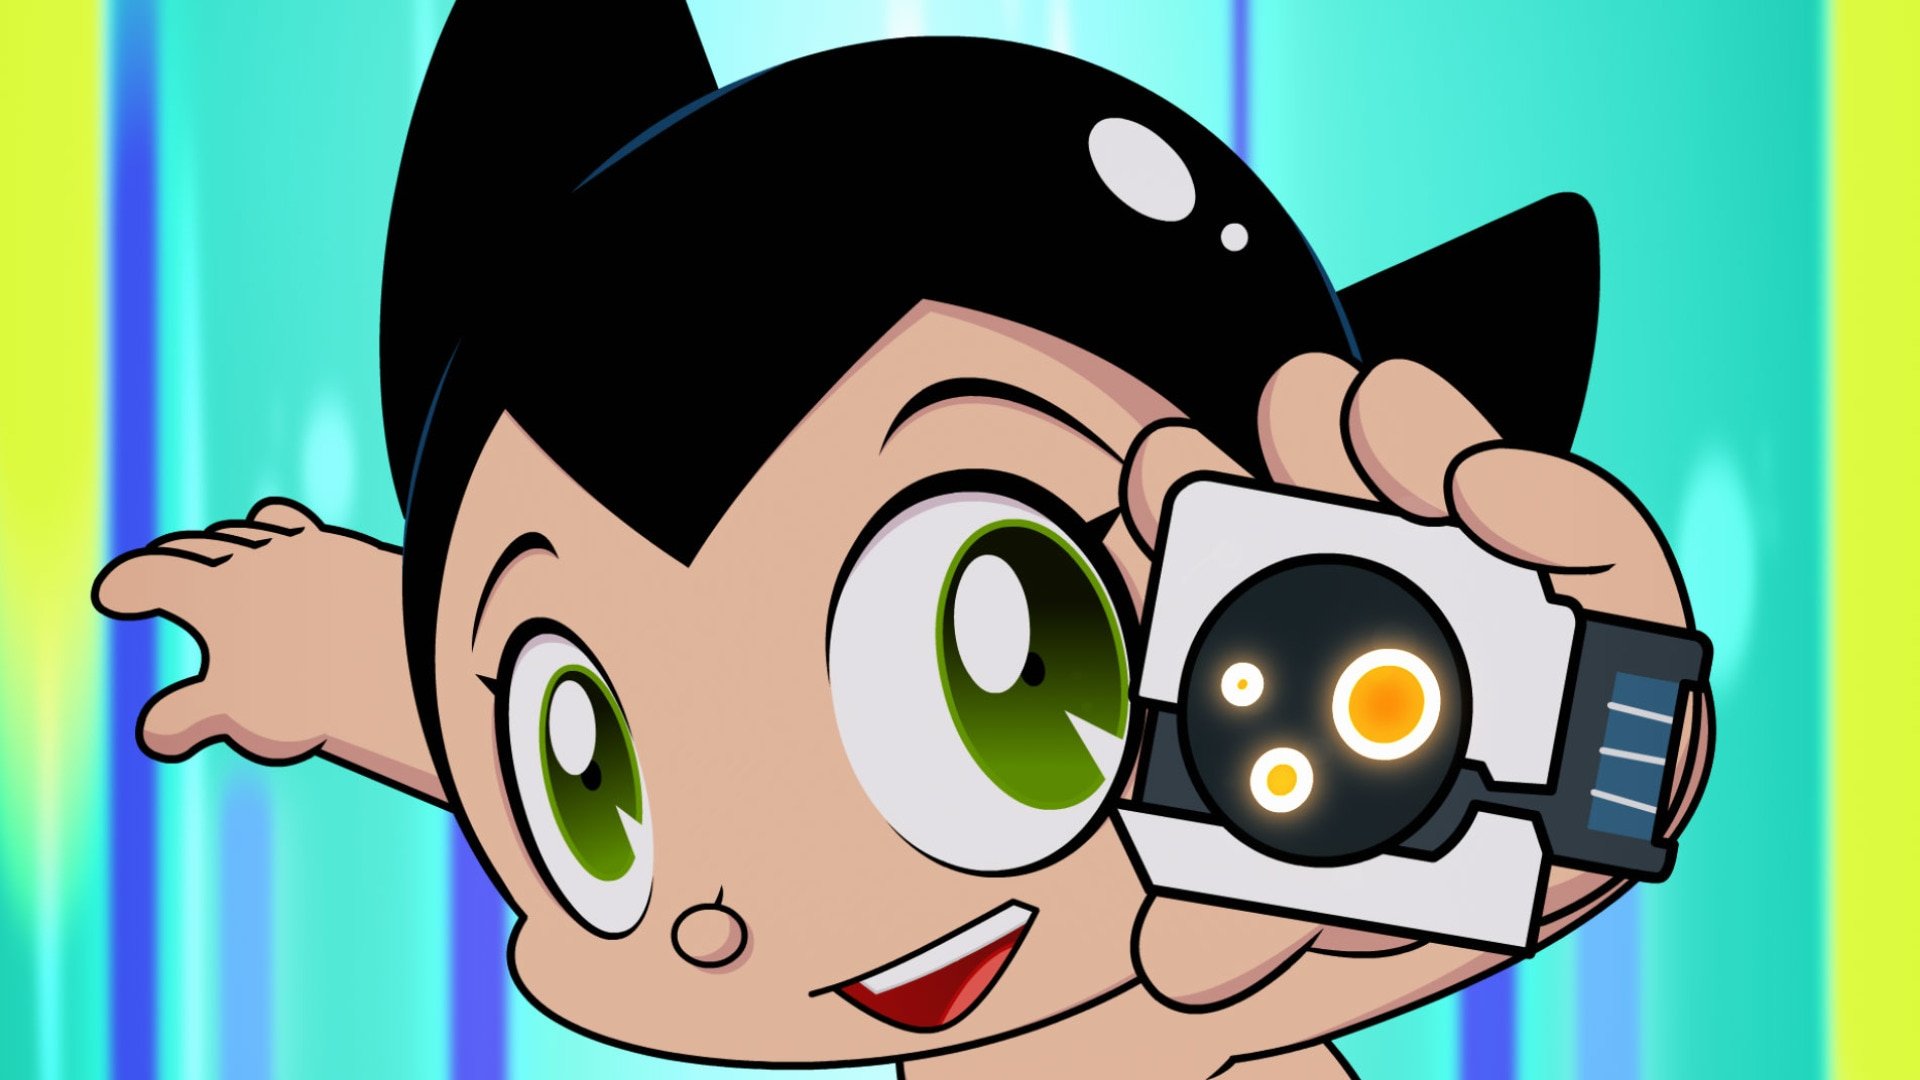 Watch Go Astro Boy Go Season 1 Episode 51 Online Stream Full Episodes